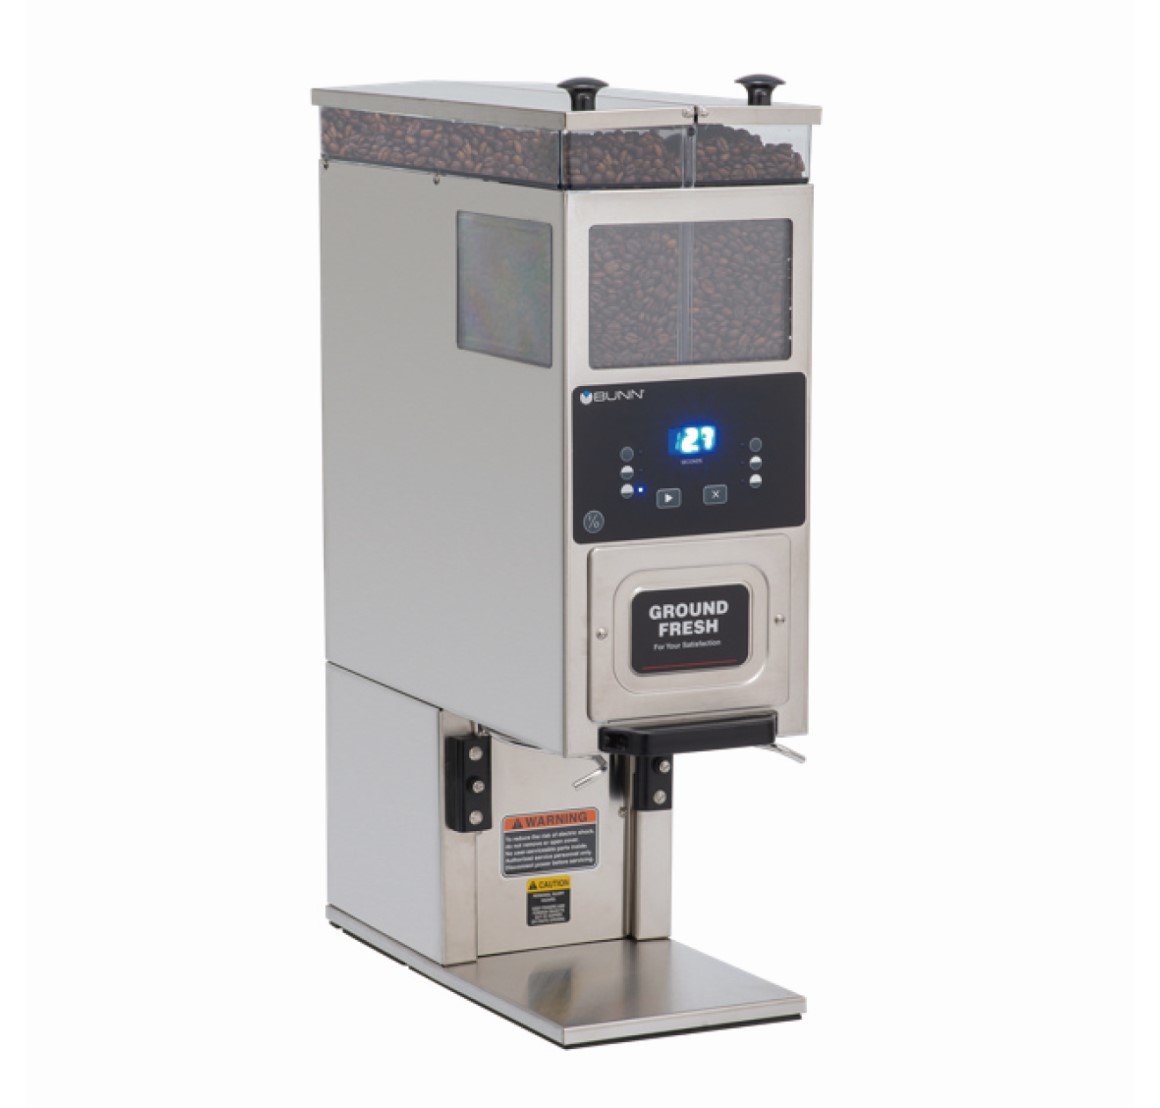 BUNN BrewWISE®デュアル SH DBC | マシンをさがす | 業務用コーヒー 